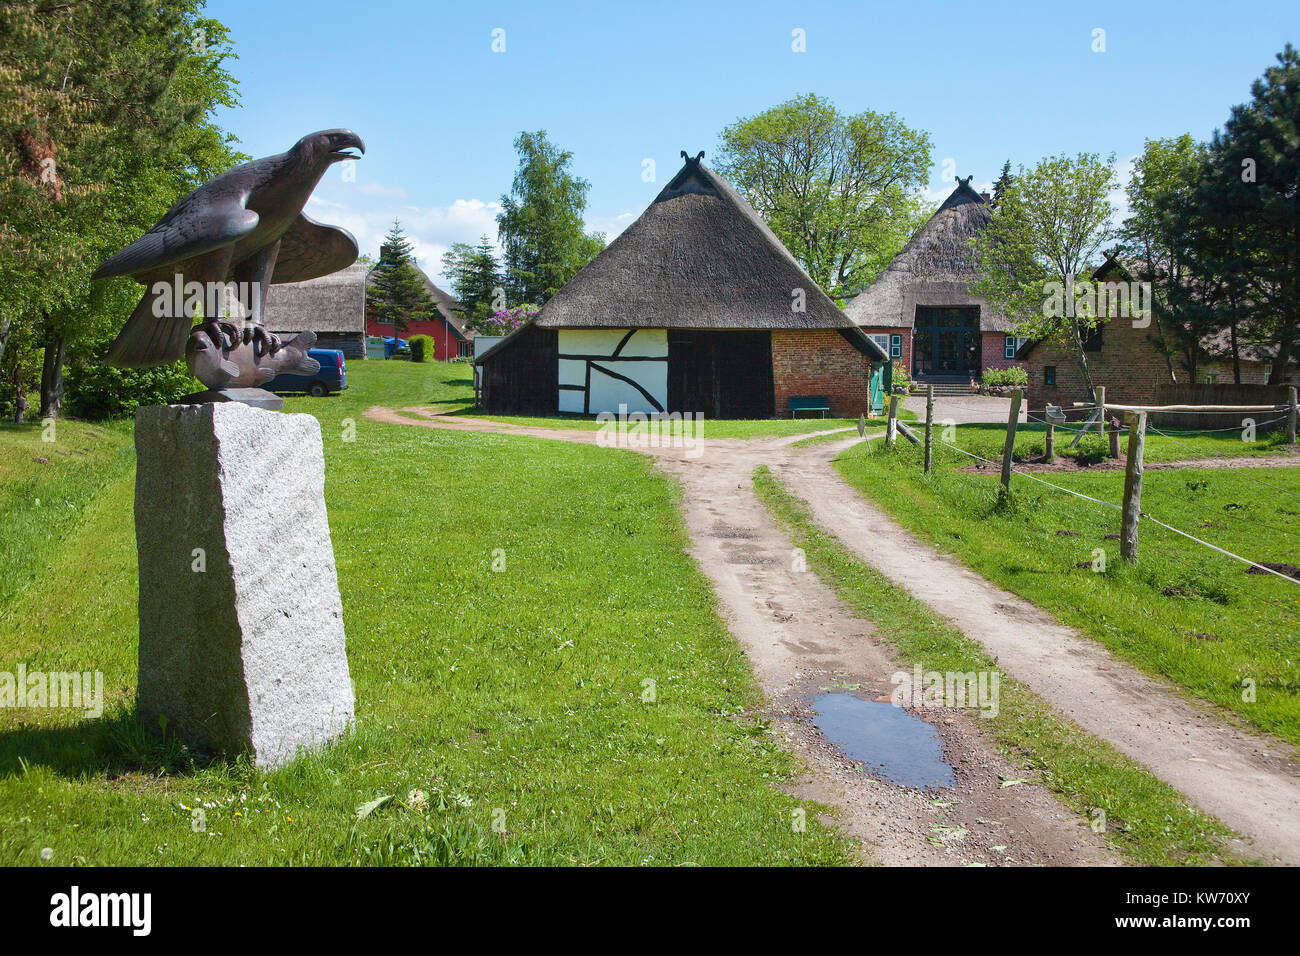 Colonia di artisti, eagle scultura e case col tetto di paglia al villaggio Ahrenshoop, Fischland, Meclemburgo-Pomerania, Mar Baltico, Germania Foto Stock